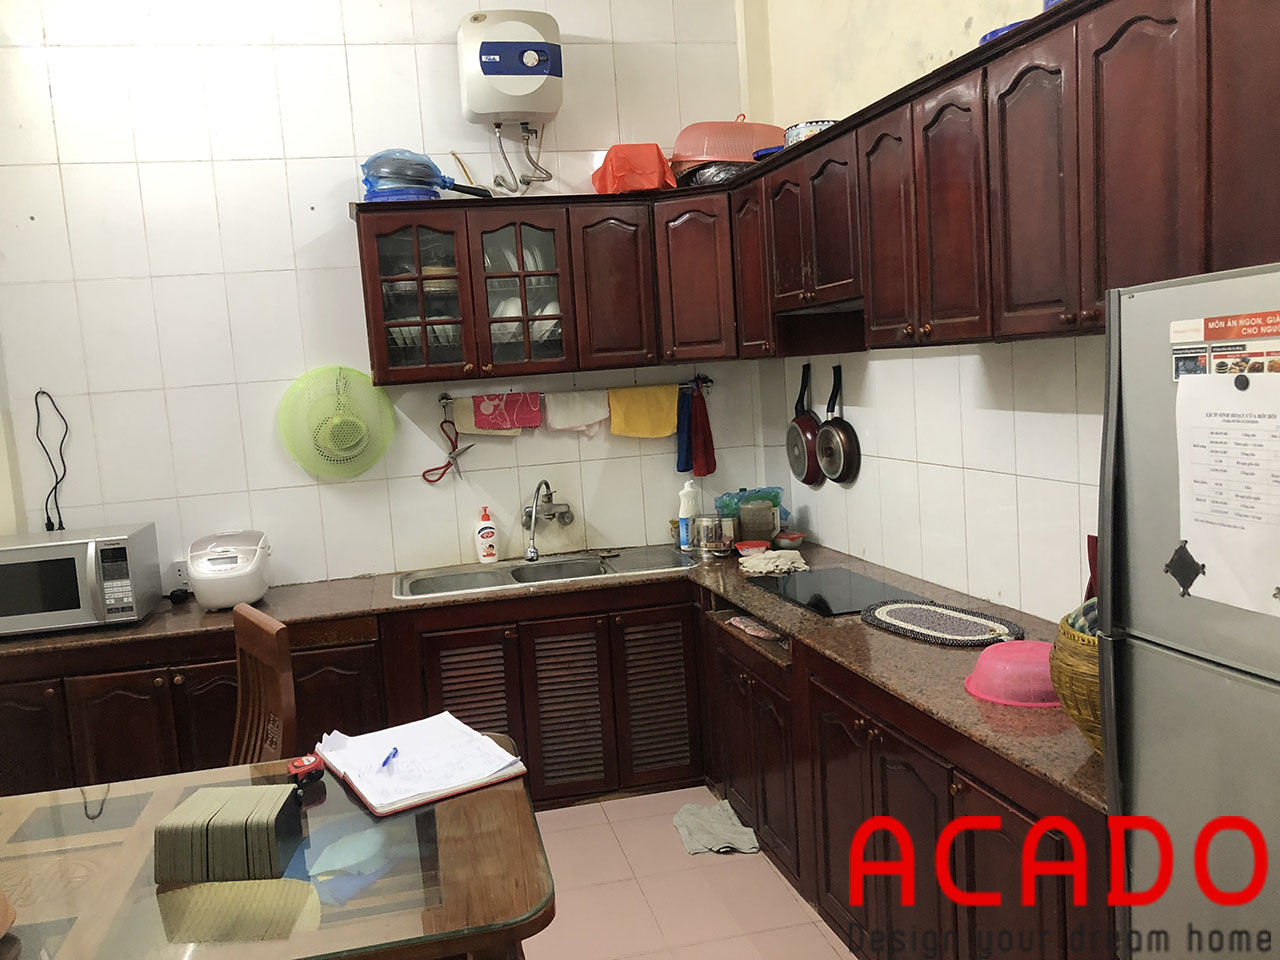 Hiện trạng căn bếp nhà chú Thịnh khi nhân viên ACADO qua khảo sát thực tế